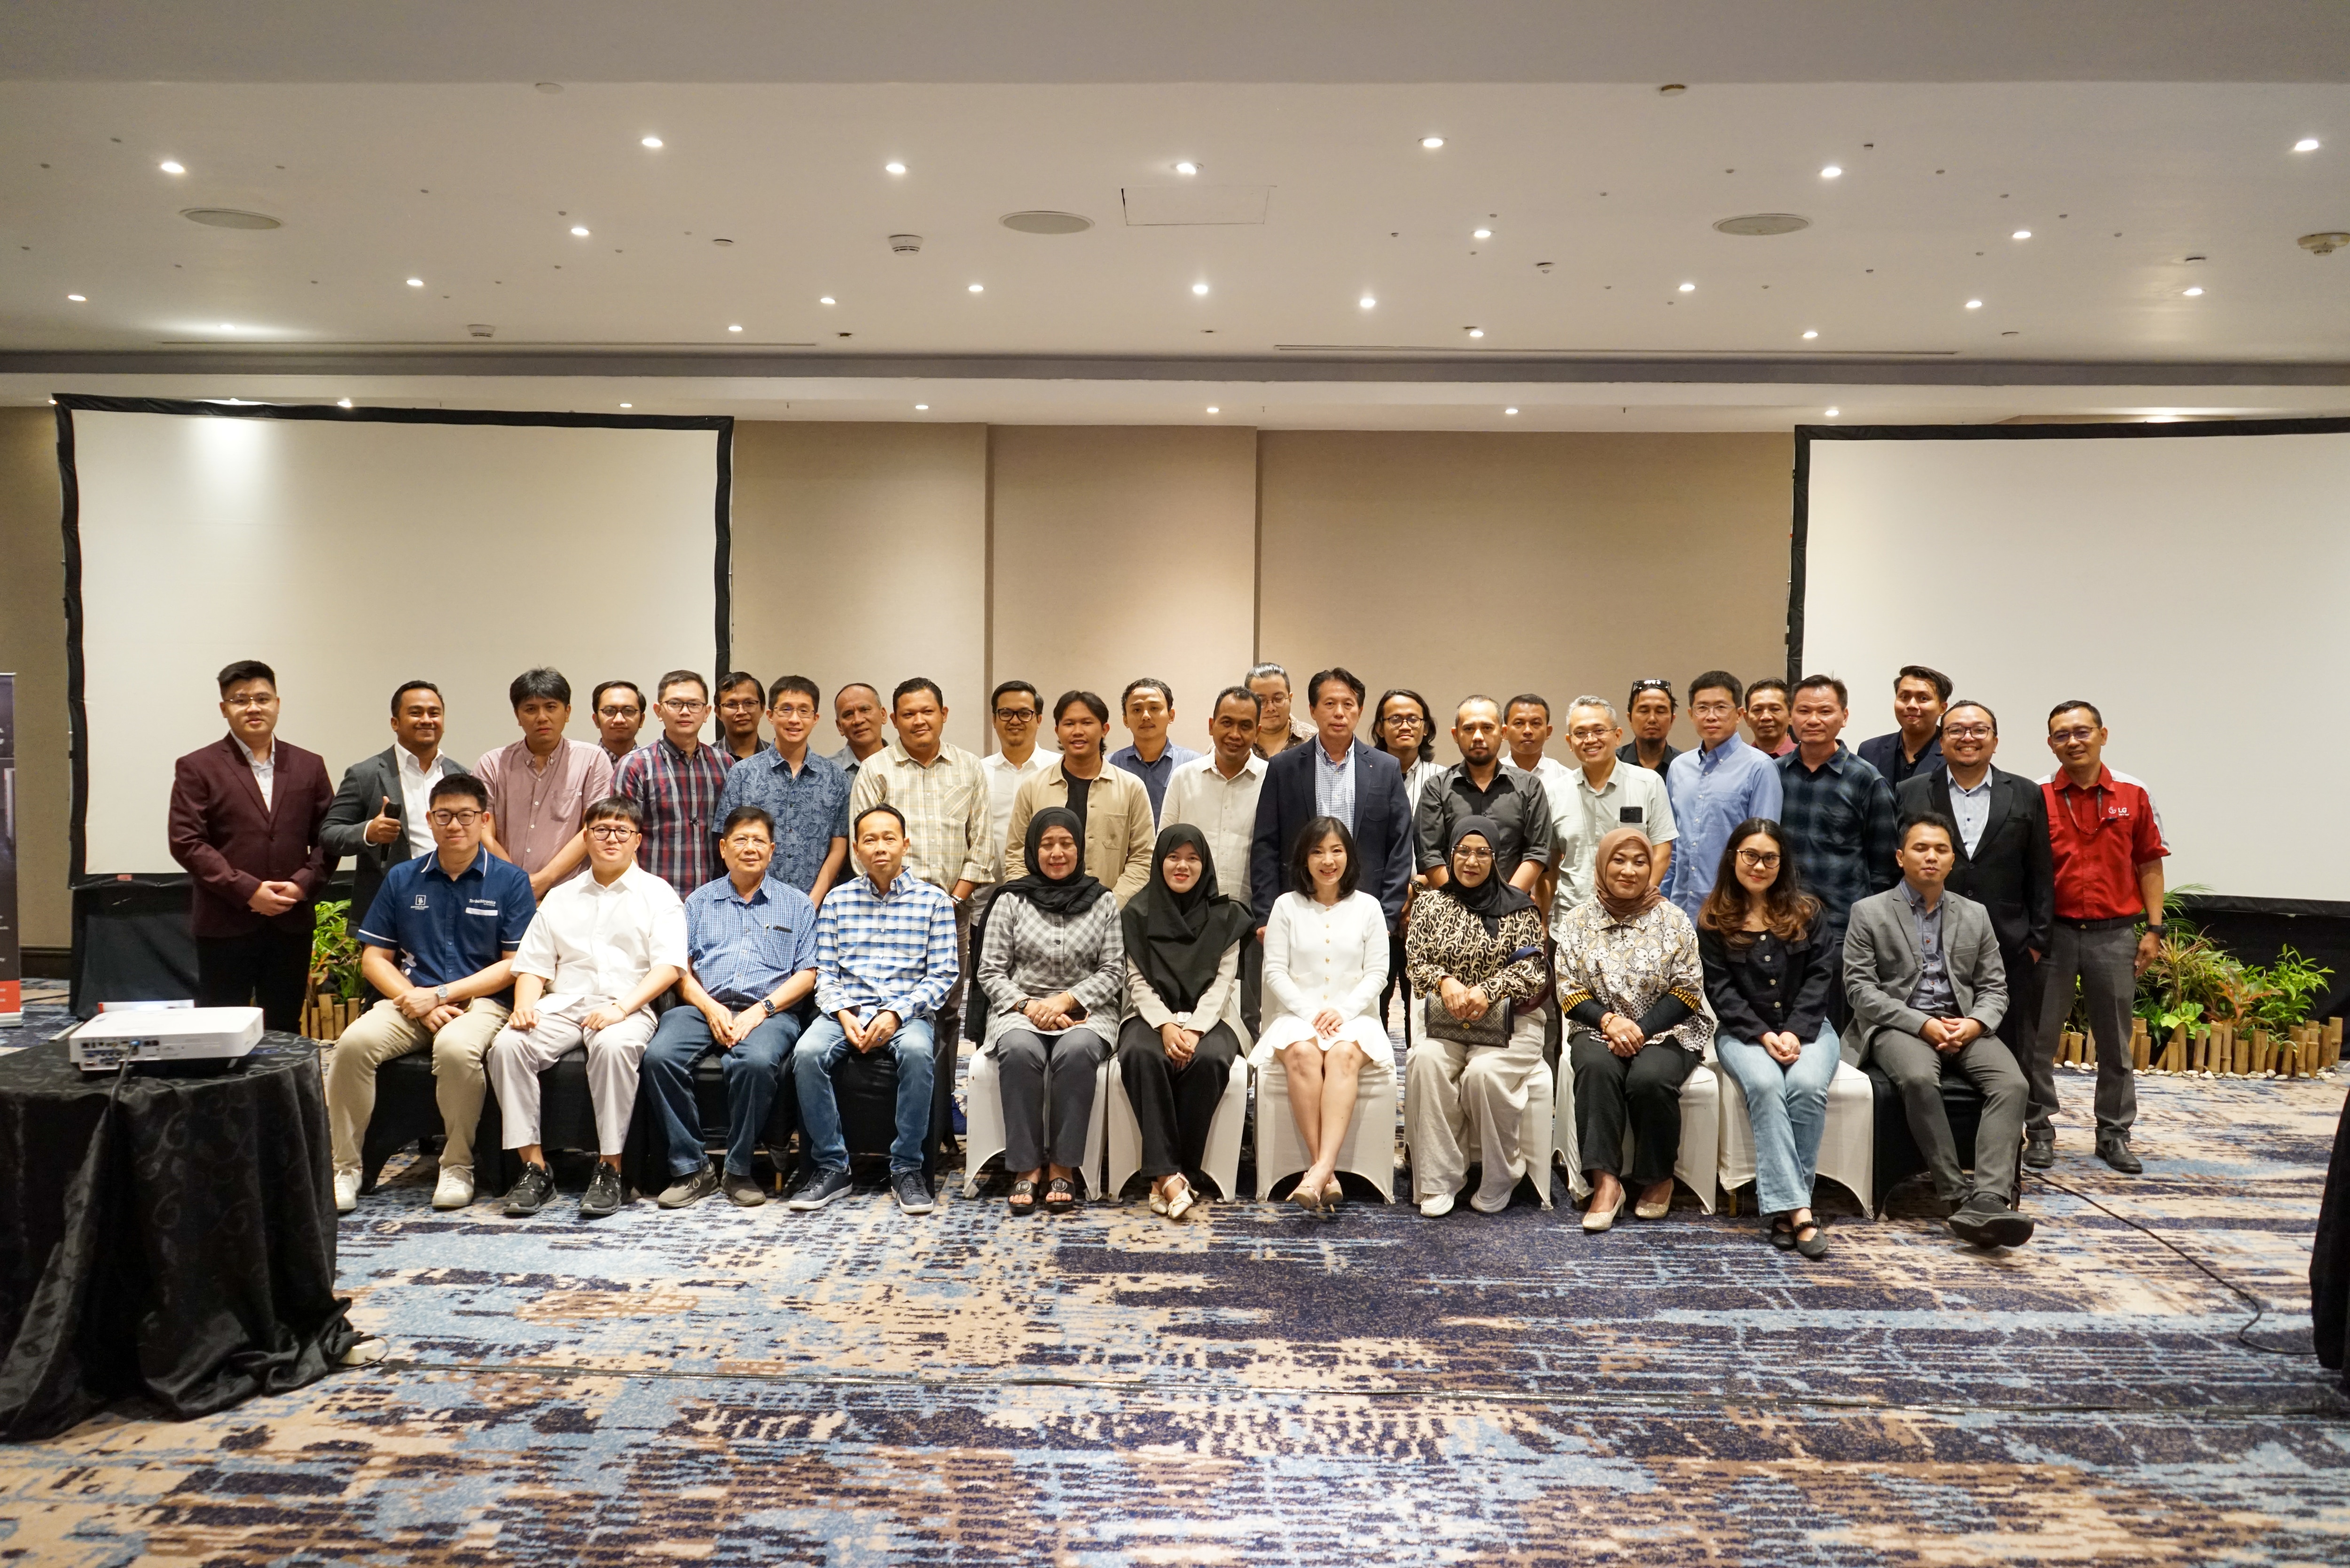 Kegiatan LG SAC Dealer Seminar di Kota Surabaya: Mengembangkan Bisnis HVAC di Indonesia